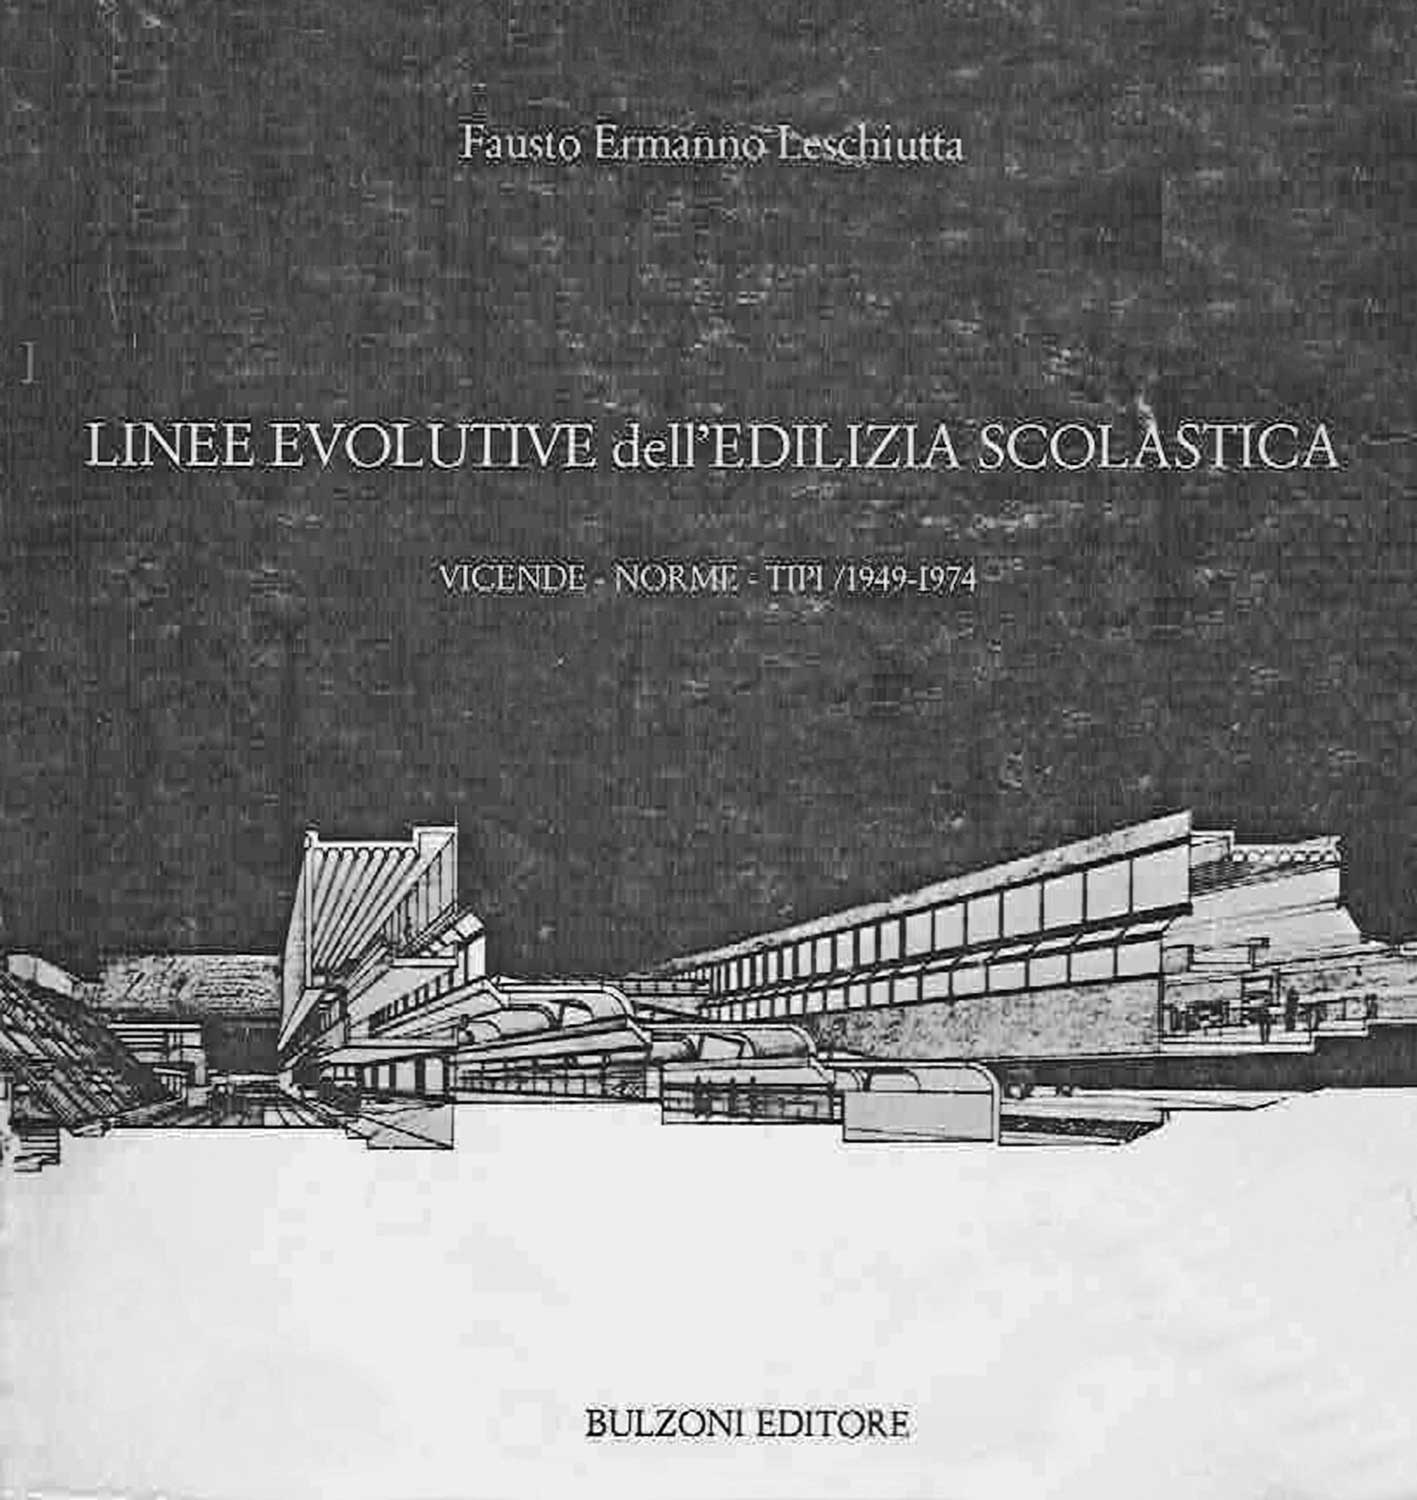 16 - Linee evolutive dell’edilizia scolastica. Vicende - Norme - Tipi/1949 -1974, Bulzoni Editore, Roma 1985 - Copertina